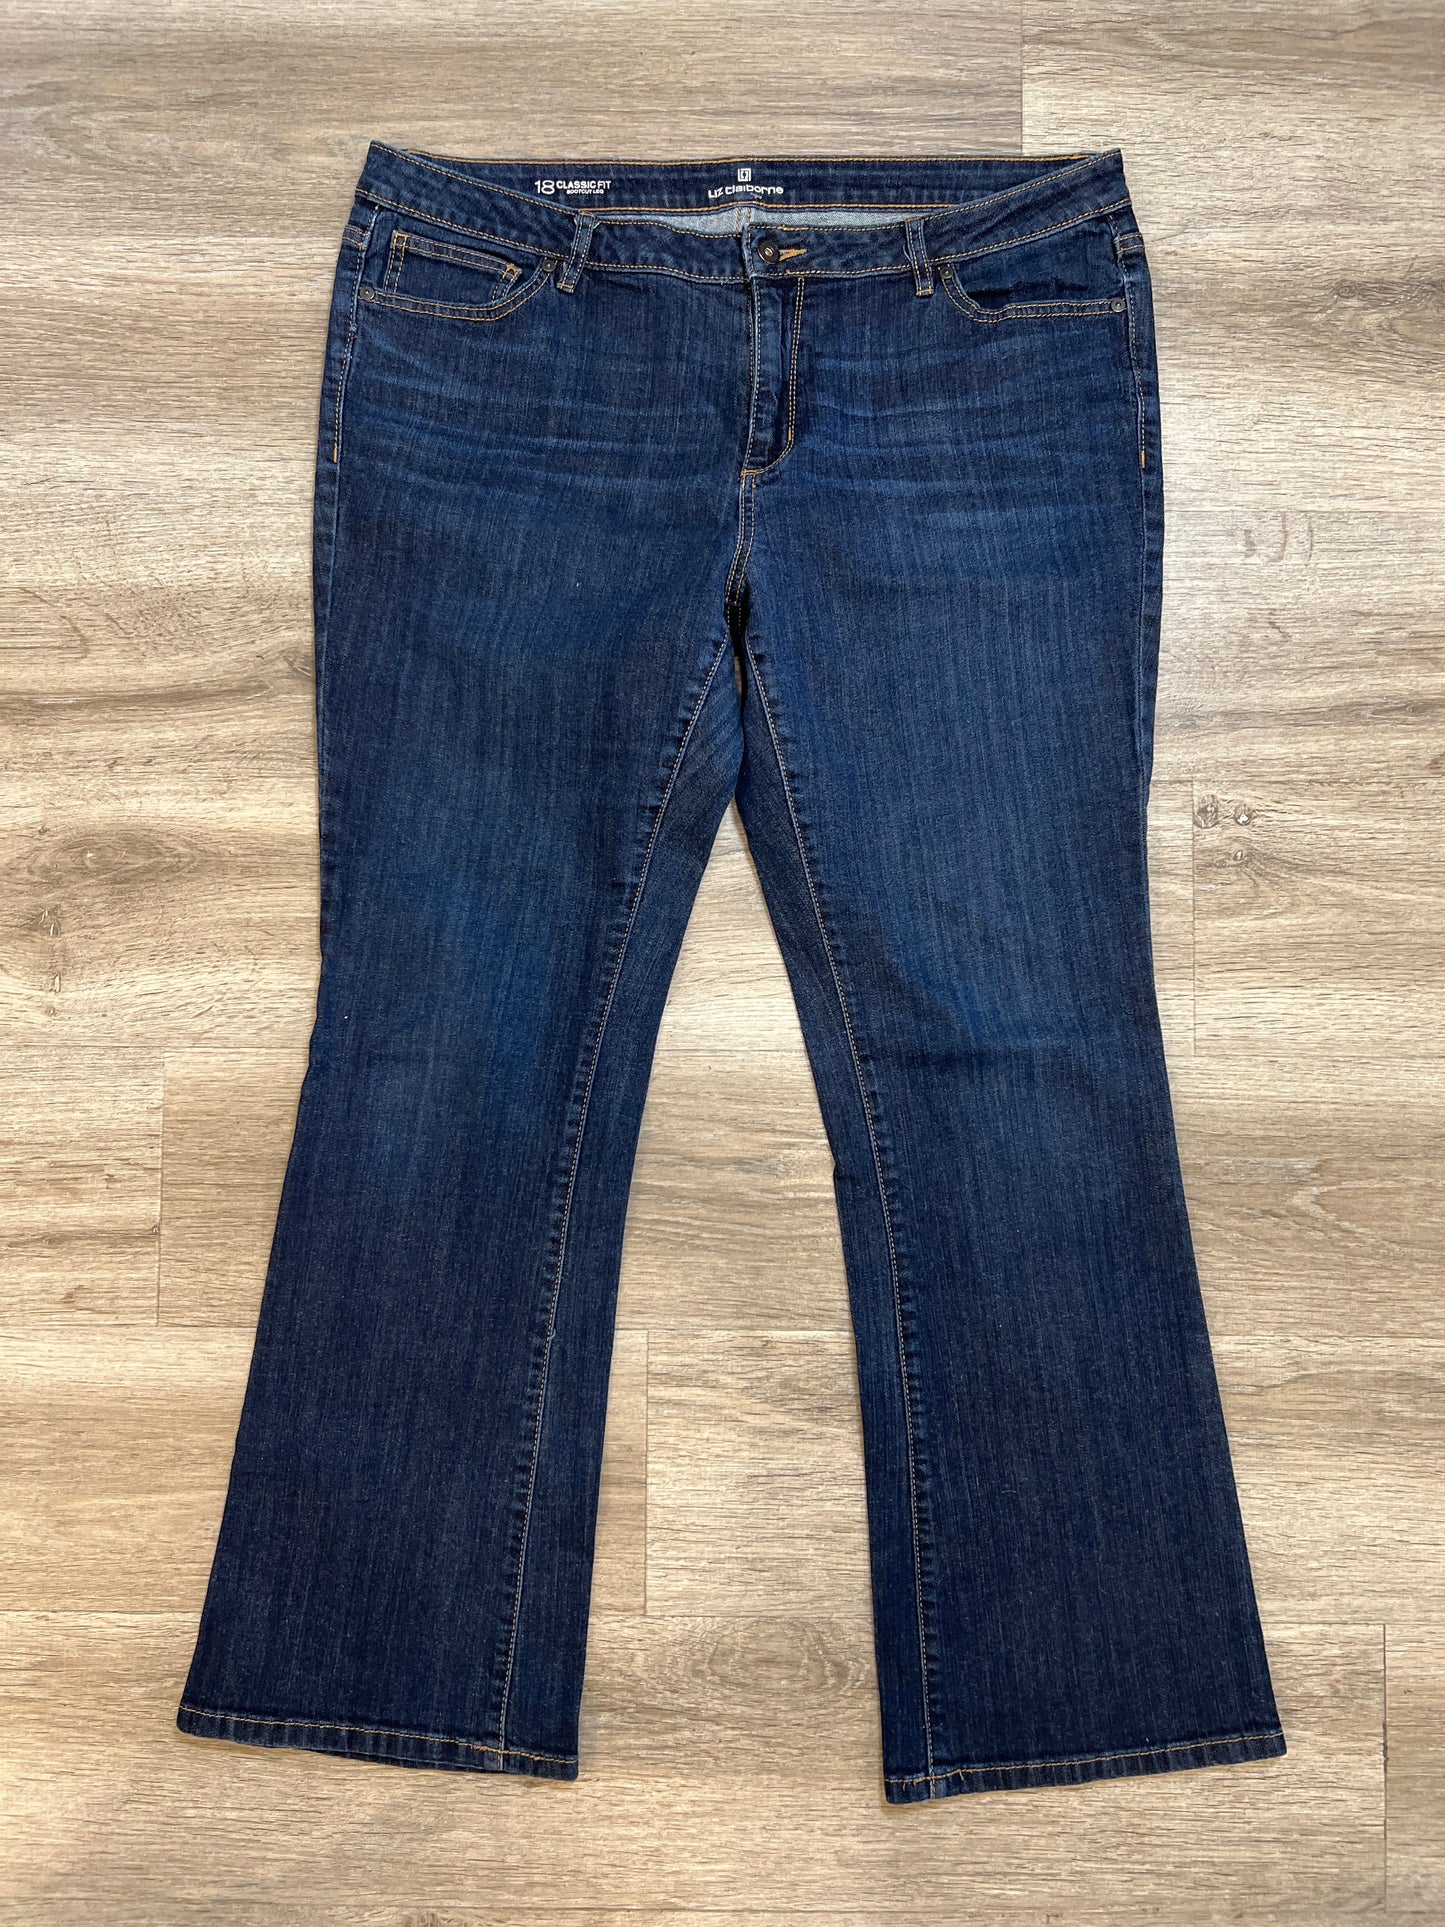 Jeans Boot Cut By Liz Claiborne  Size: 18